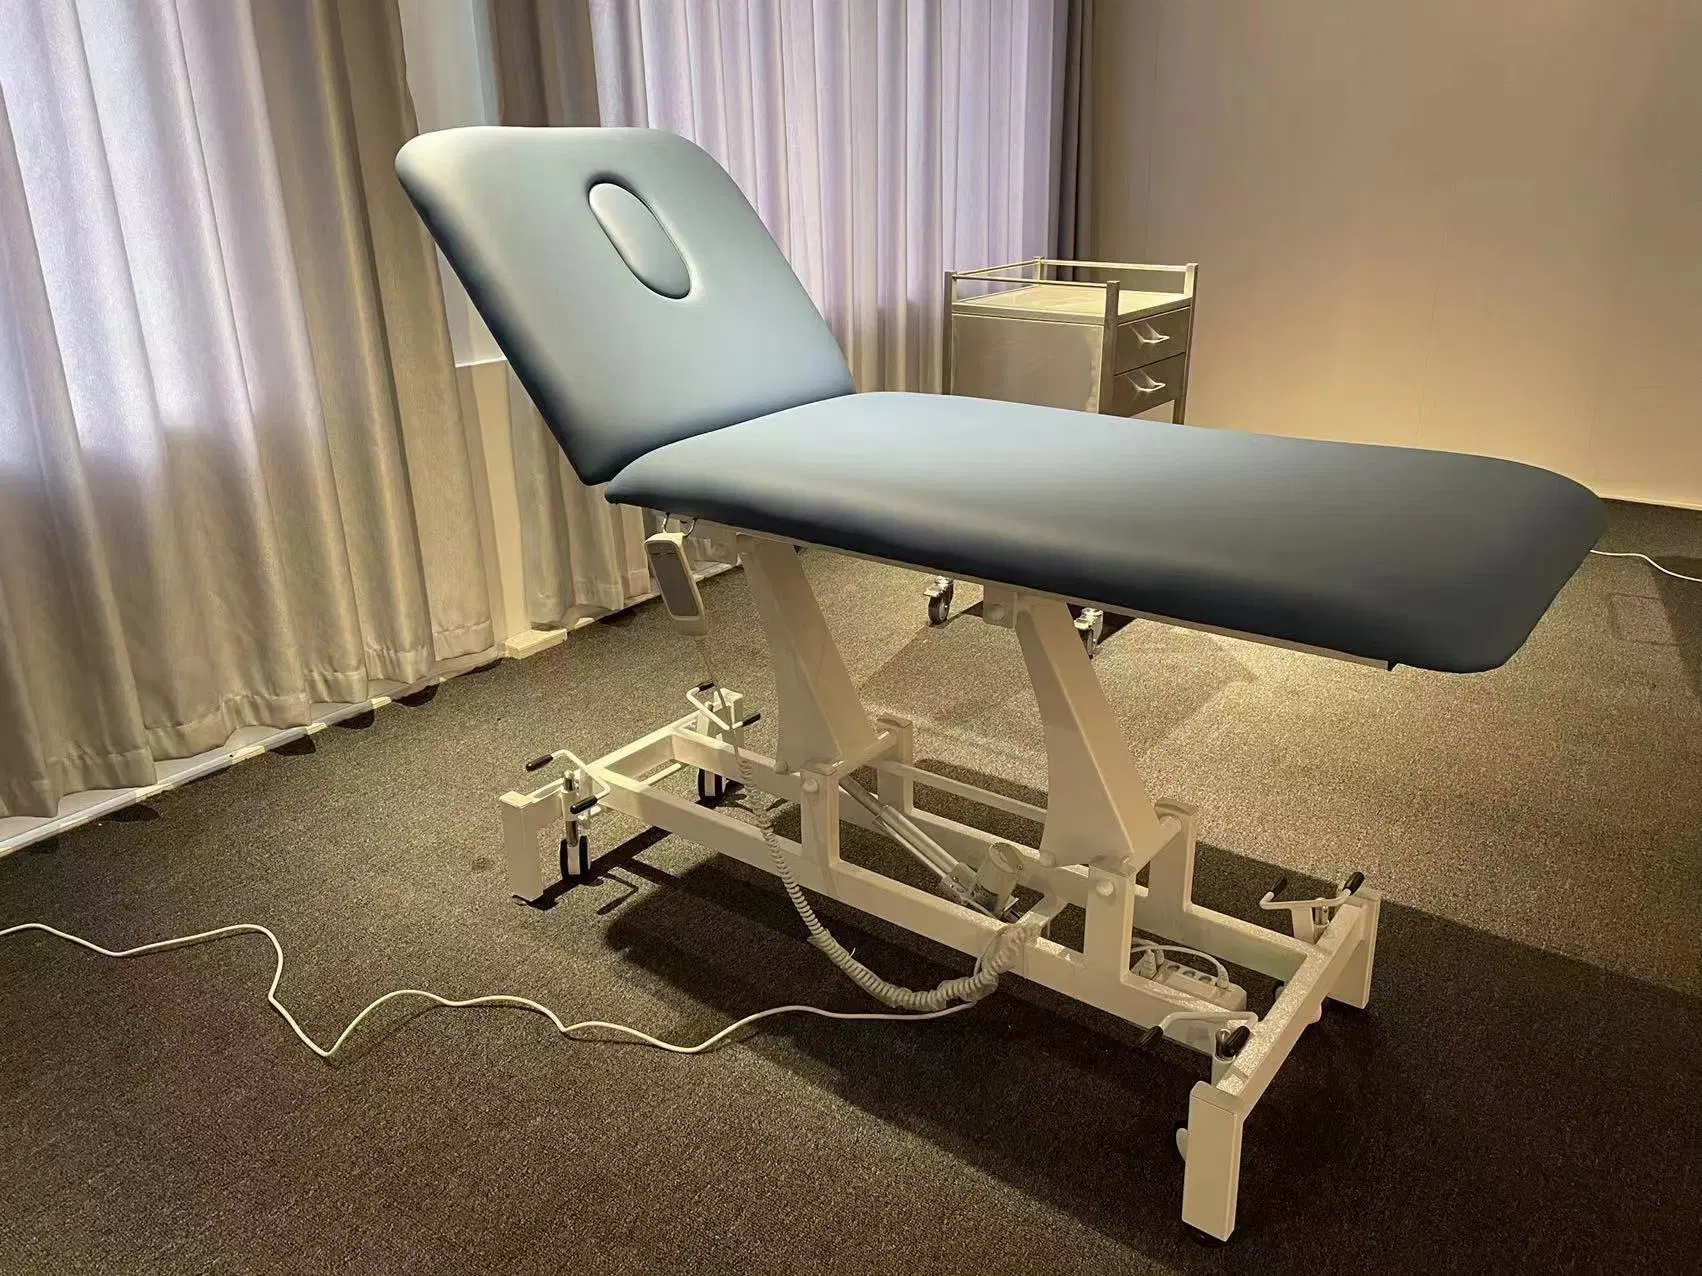 Electric Examinar Bed cama de hospital de belleza spa masaje CAMA CAMA CAMA